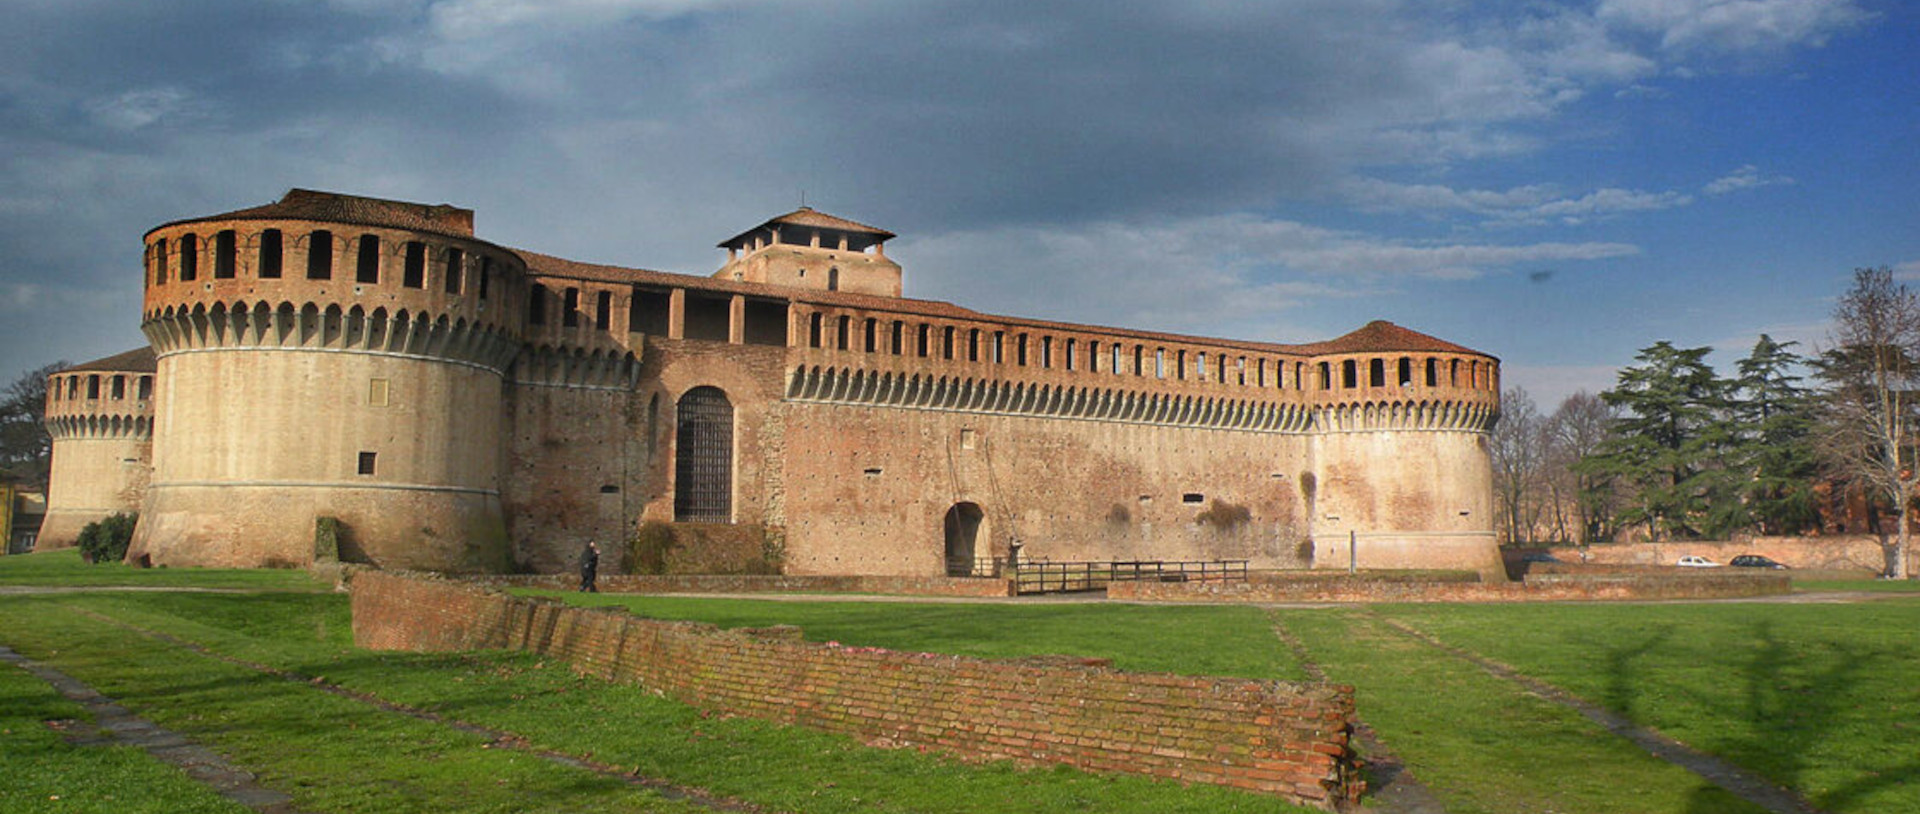 La Rocca di Imola - Foto dal sito dei Musei Civici di Imola